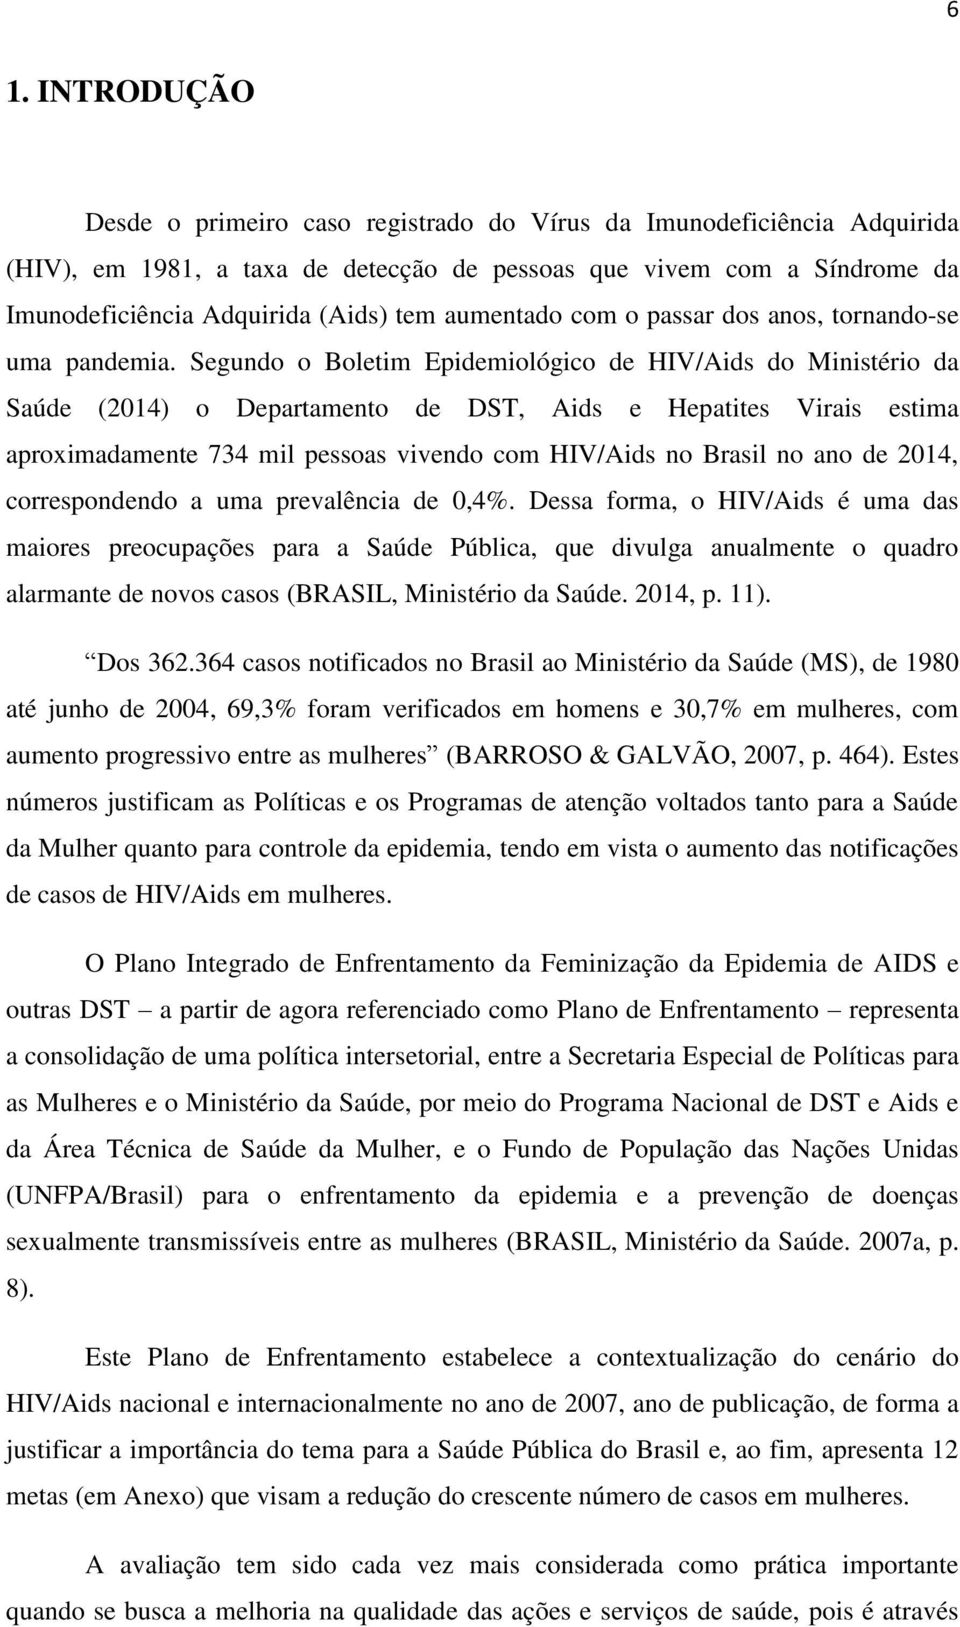 Segundo o Boletim Epidemiológico de HIV/Aids do Ministério da Saúde (2014) o Departamento de DST, Aids e Hepatites Virais estima aproximadamente 734 mil pessoas vivendo com HIV/Aids no Brasil no ano